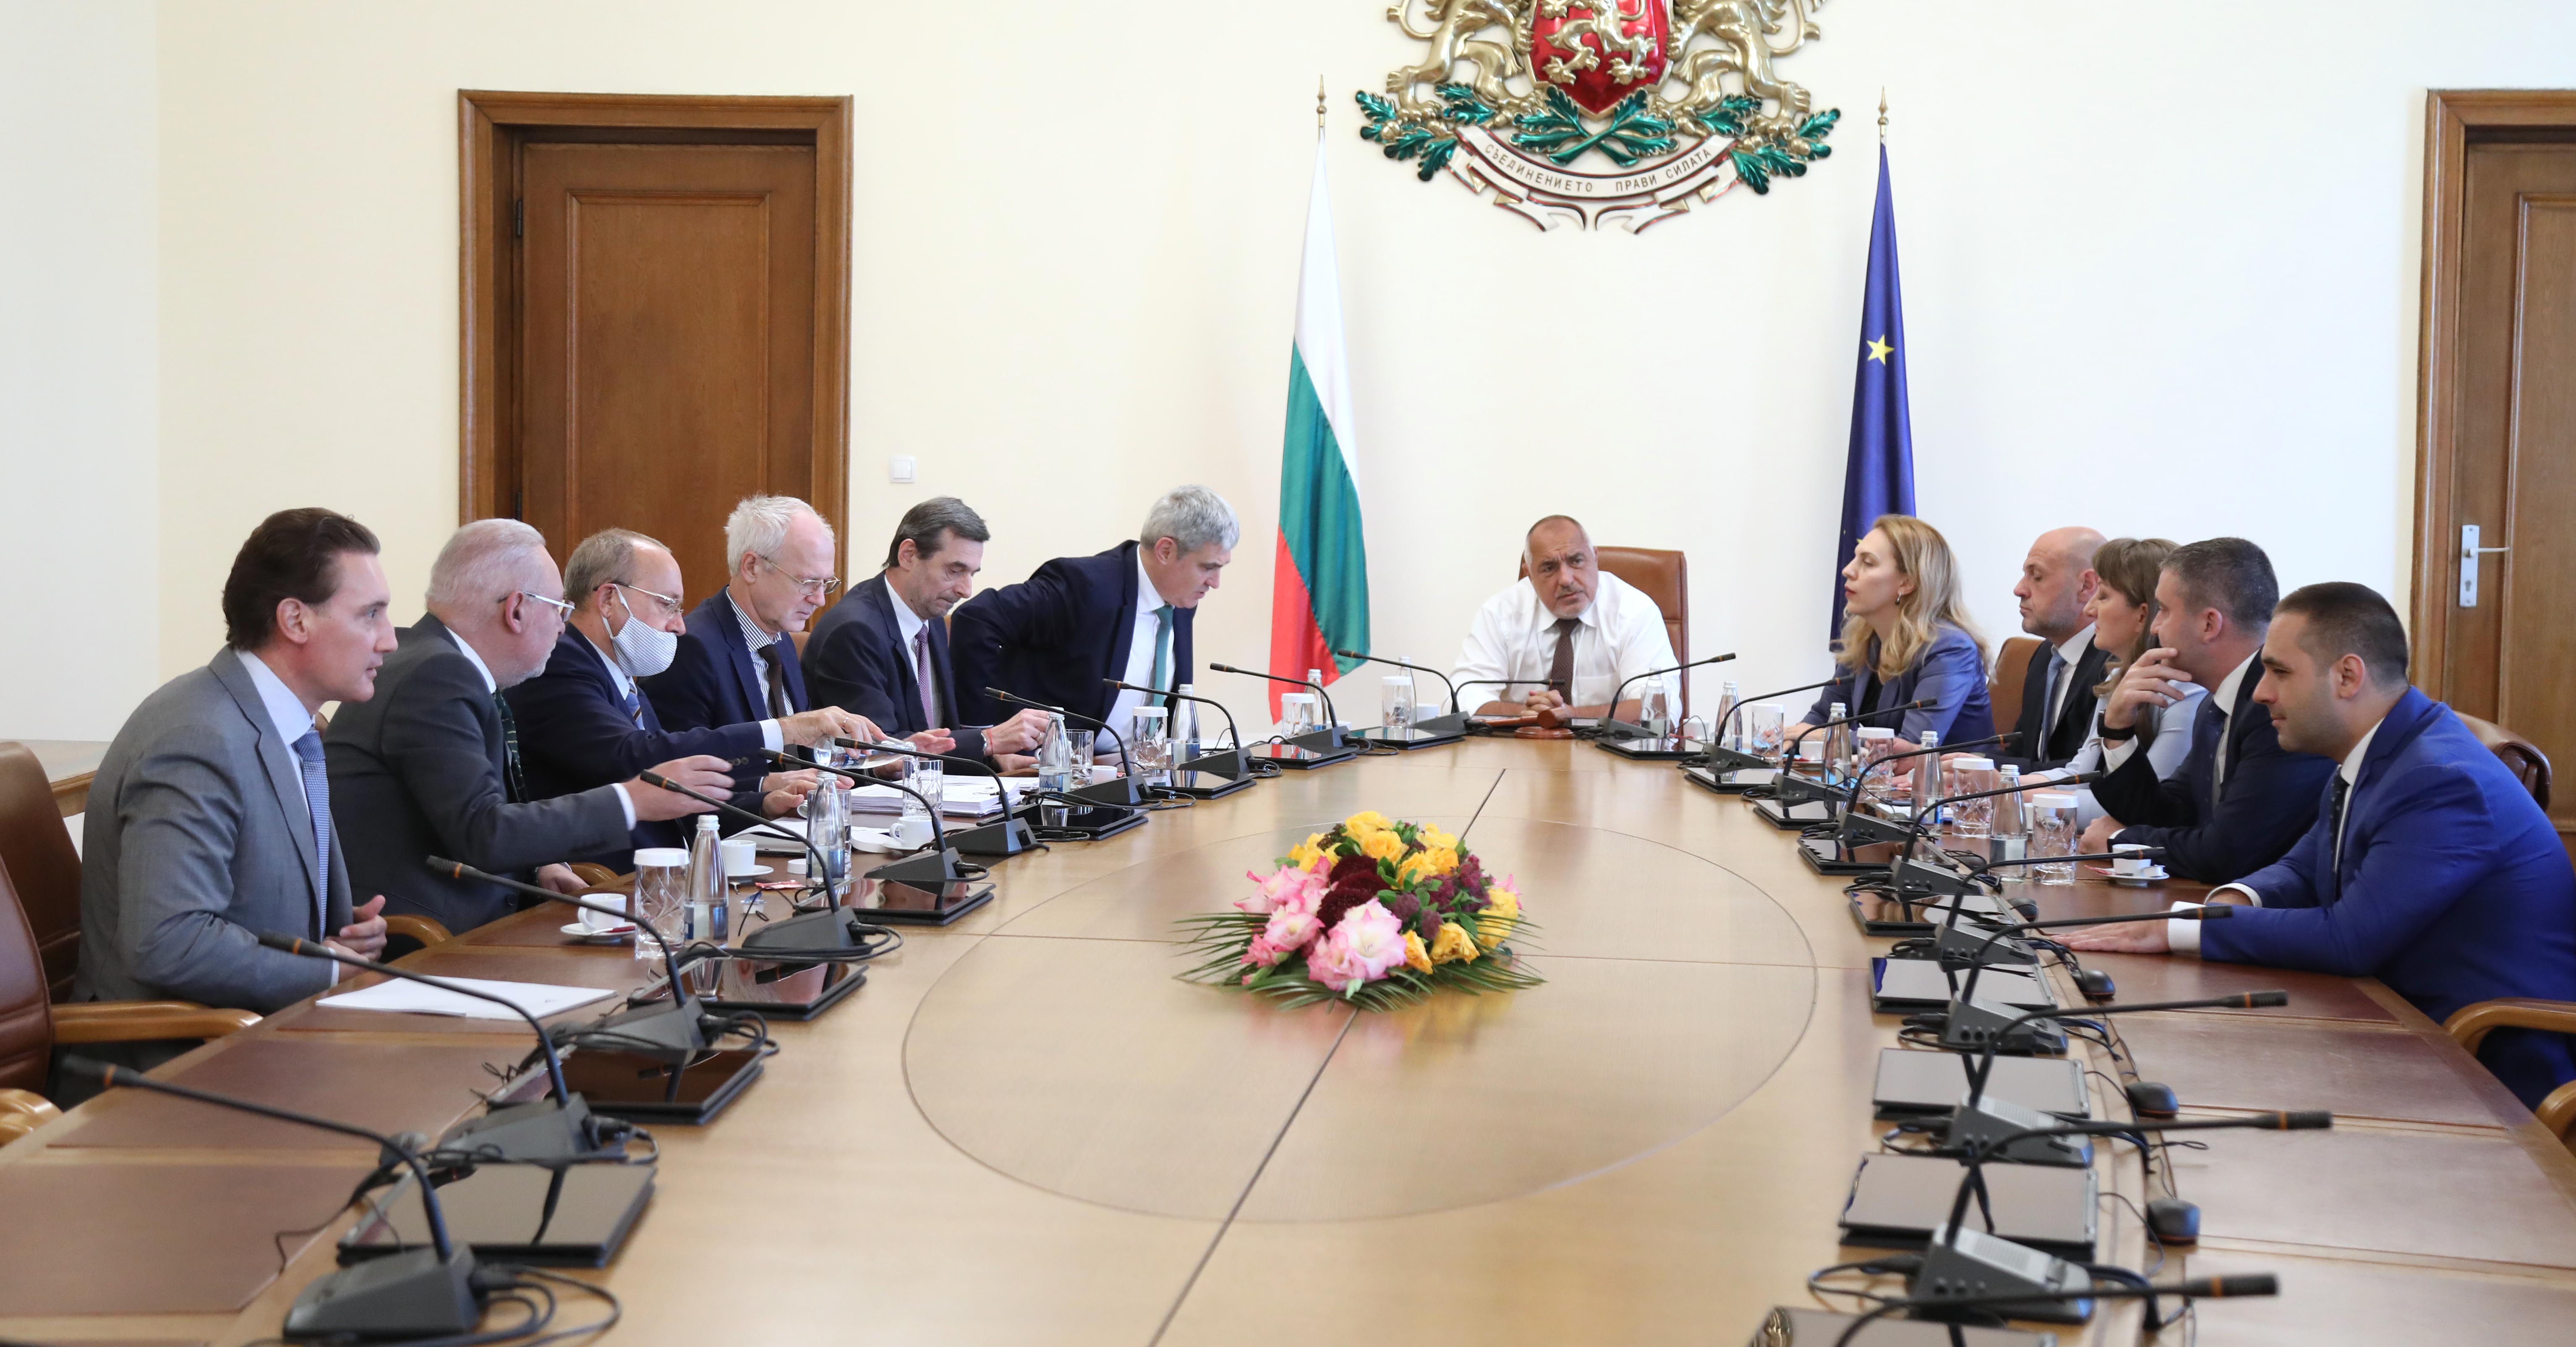 Премиерът Борисов проведе среща с представители на бизнеса и синдикалните организации